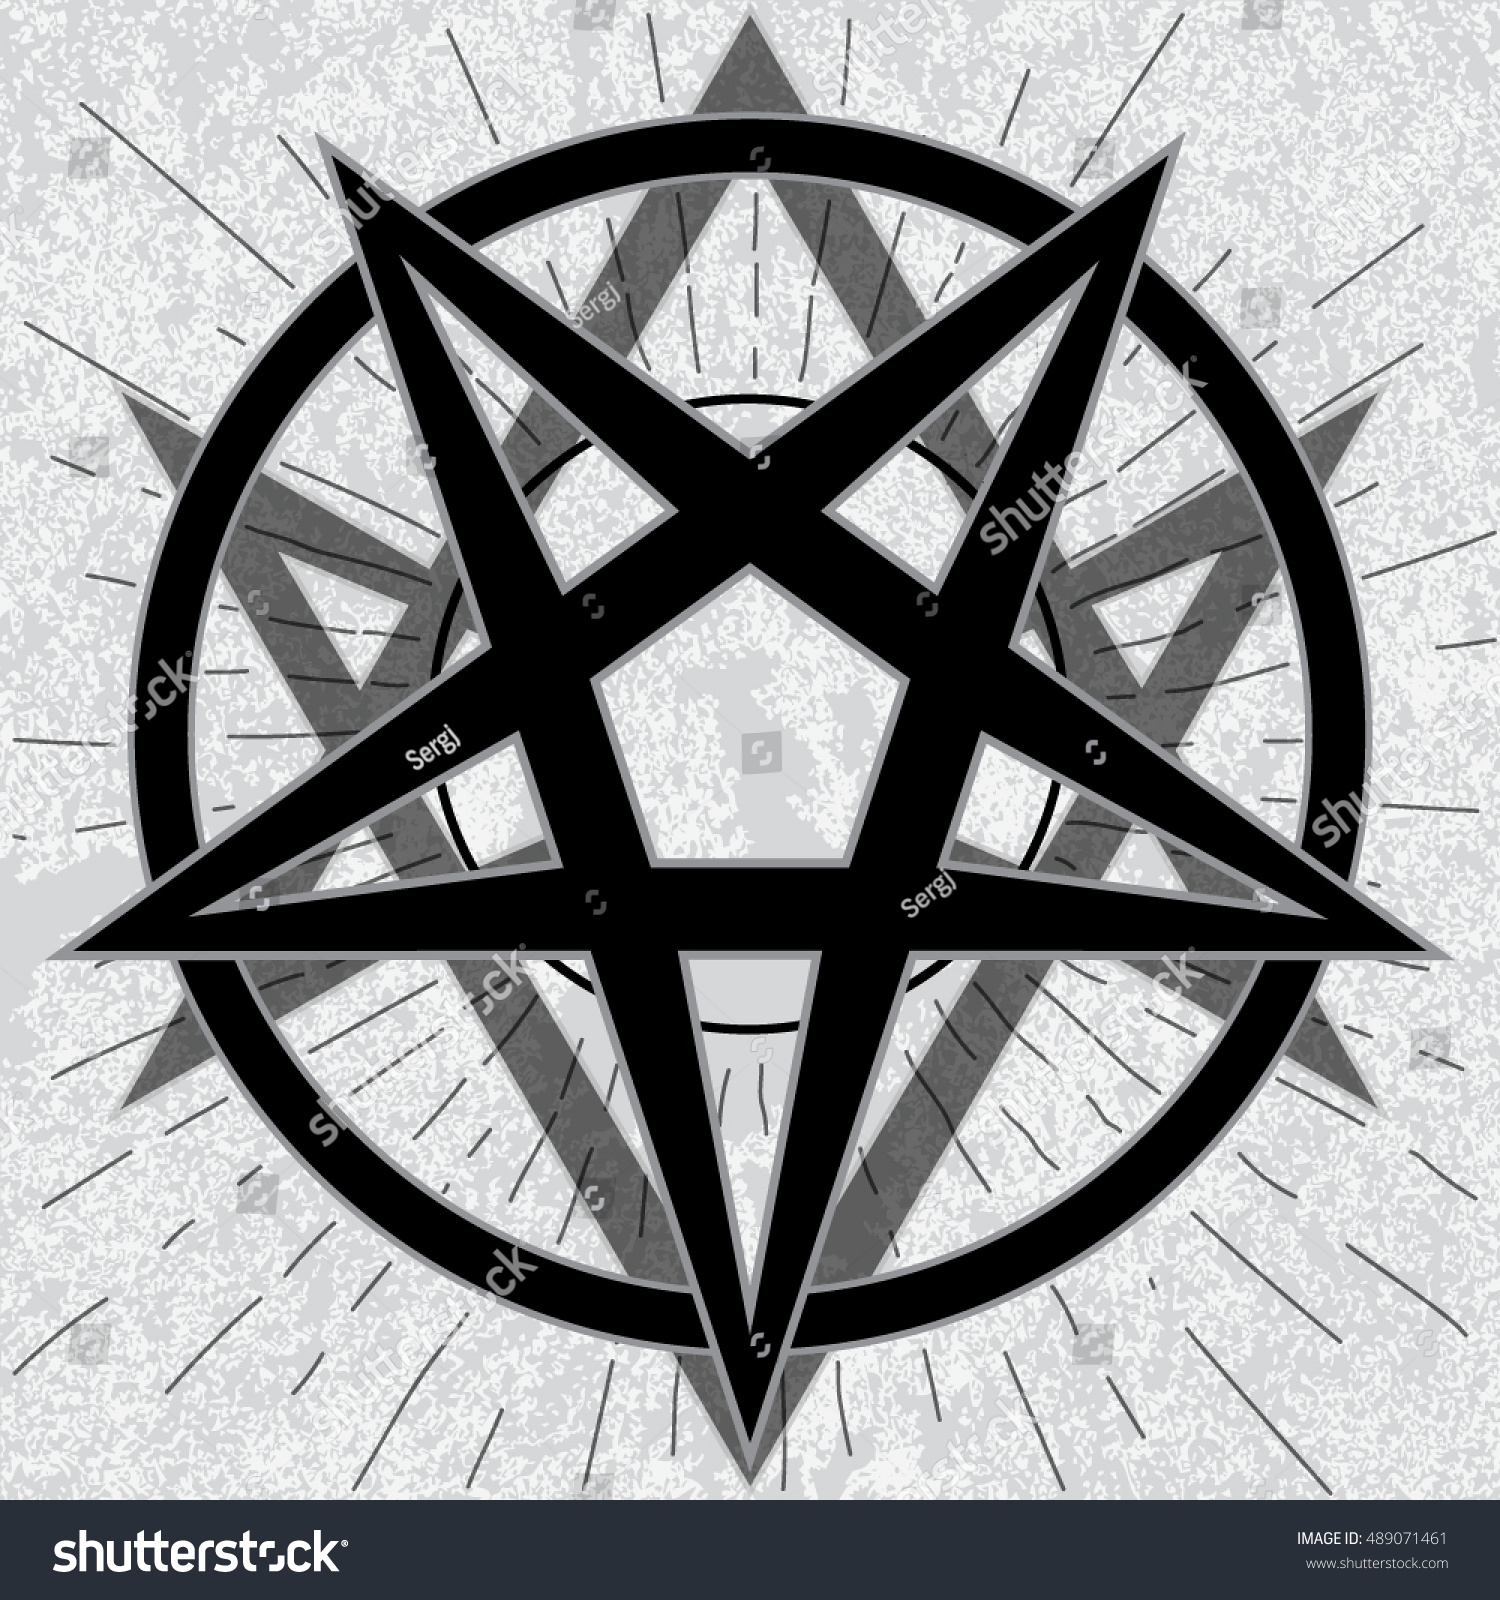 Сатанинская оккультная пентаграмма в виде звезды